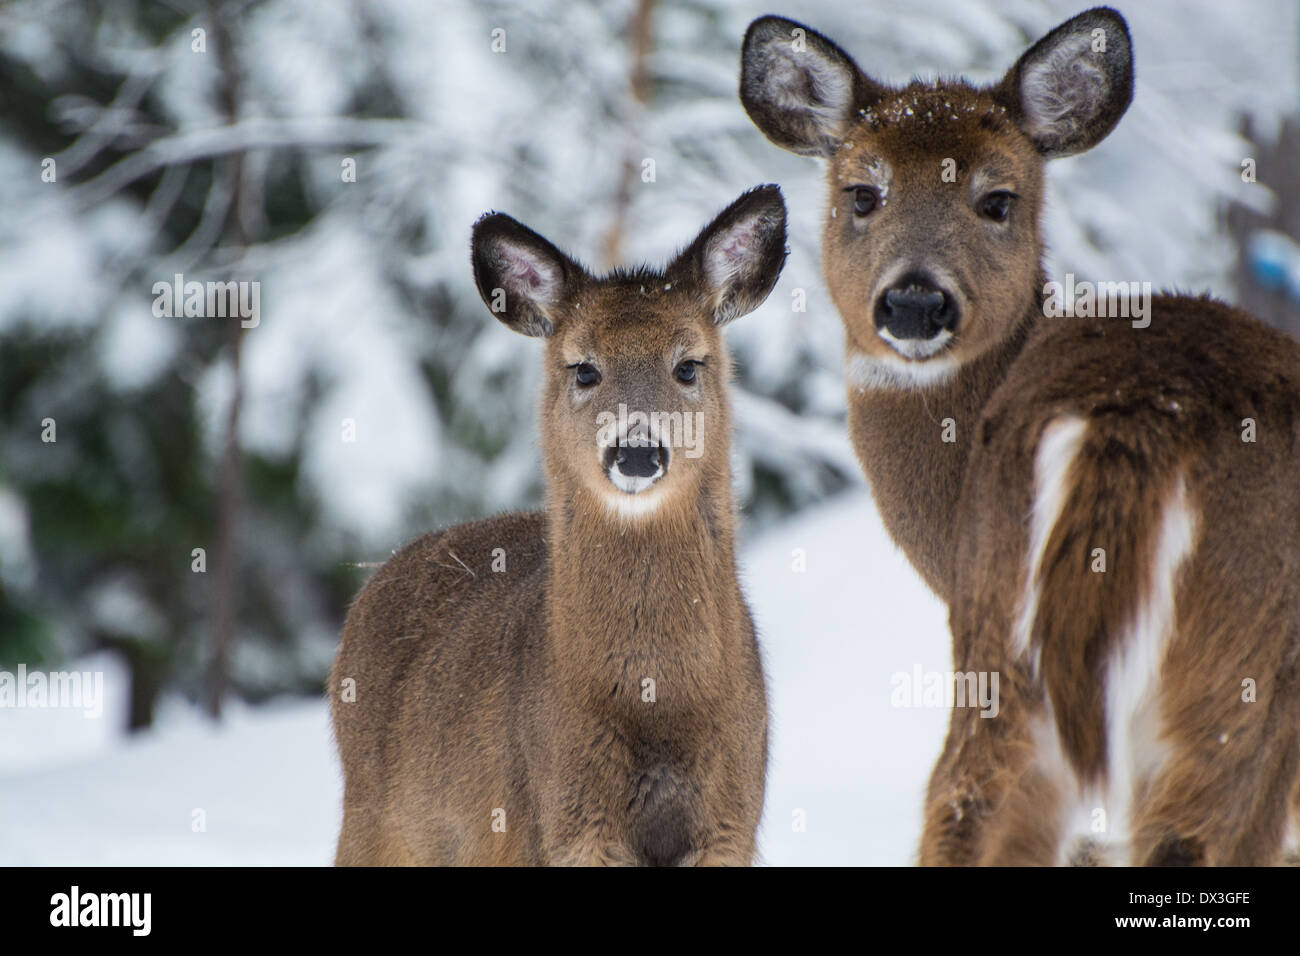 Deer in snow Stock Photo